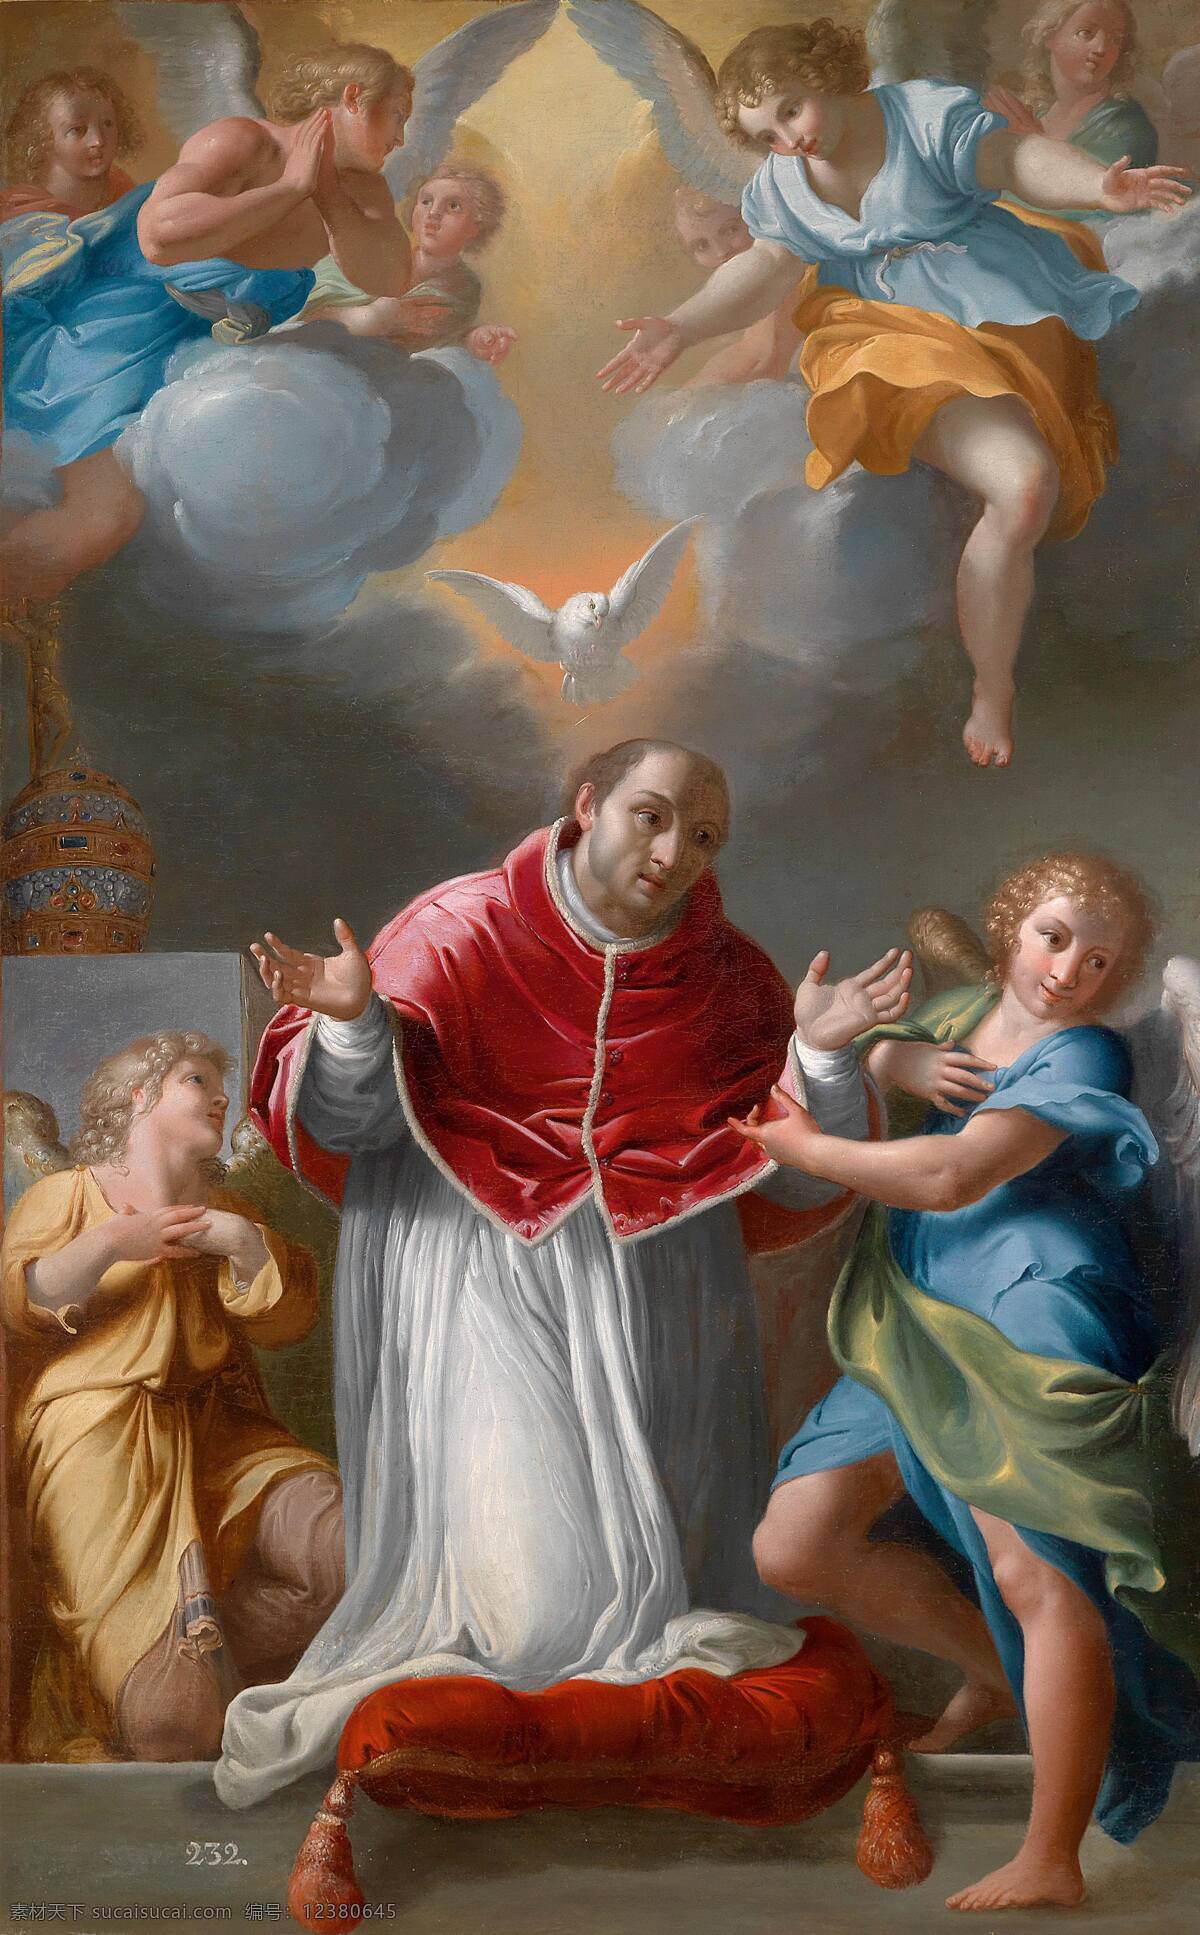 绘画书法 祈祷 文化艺术 油画 格雷 戈瑞 教皇 设计素材 模板下载 格雷戈瑞教皇 罗马著名教皇 贤君 天使降临 19世纪油画